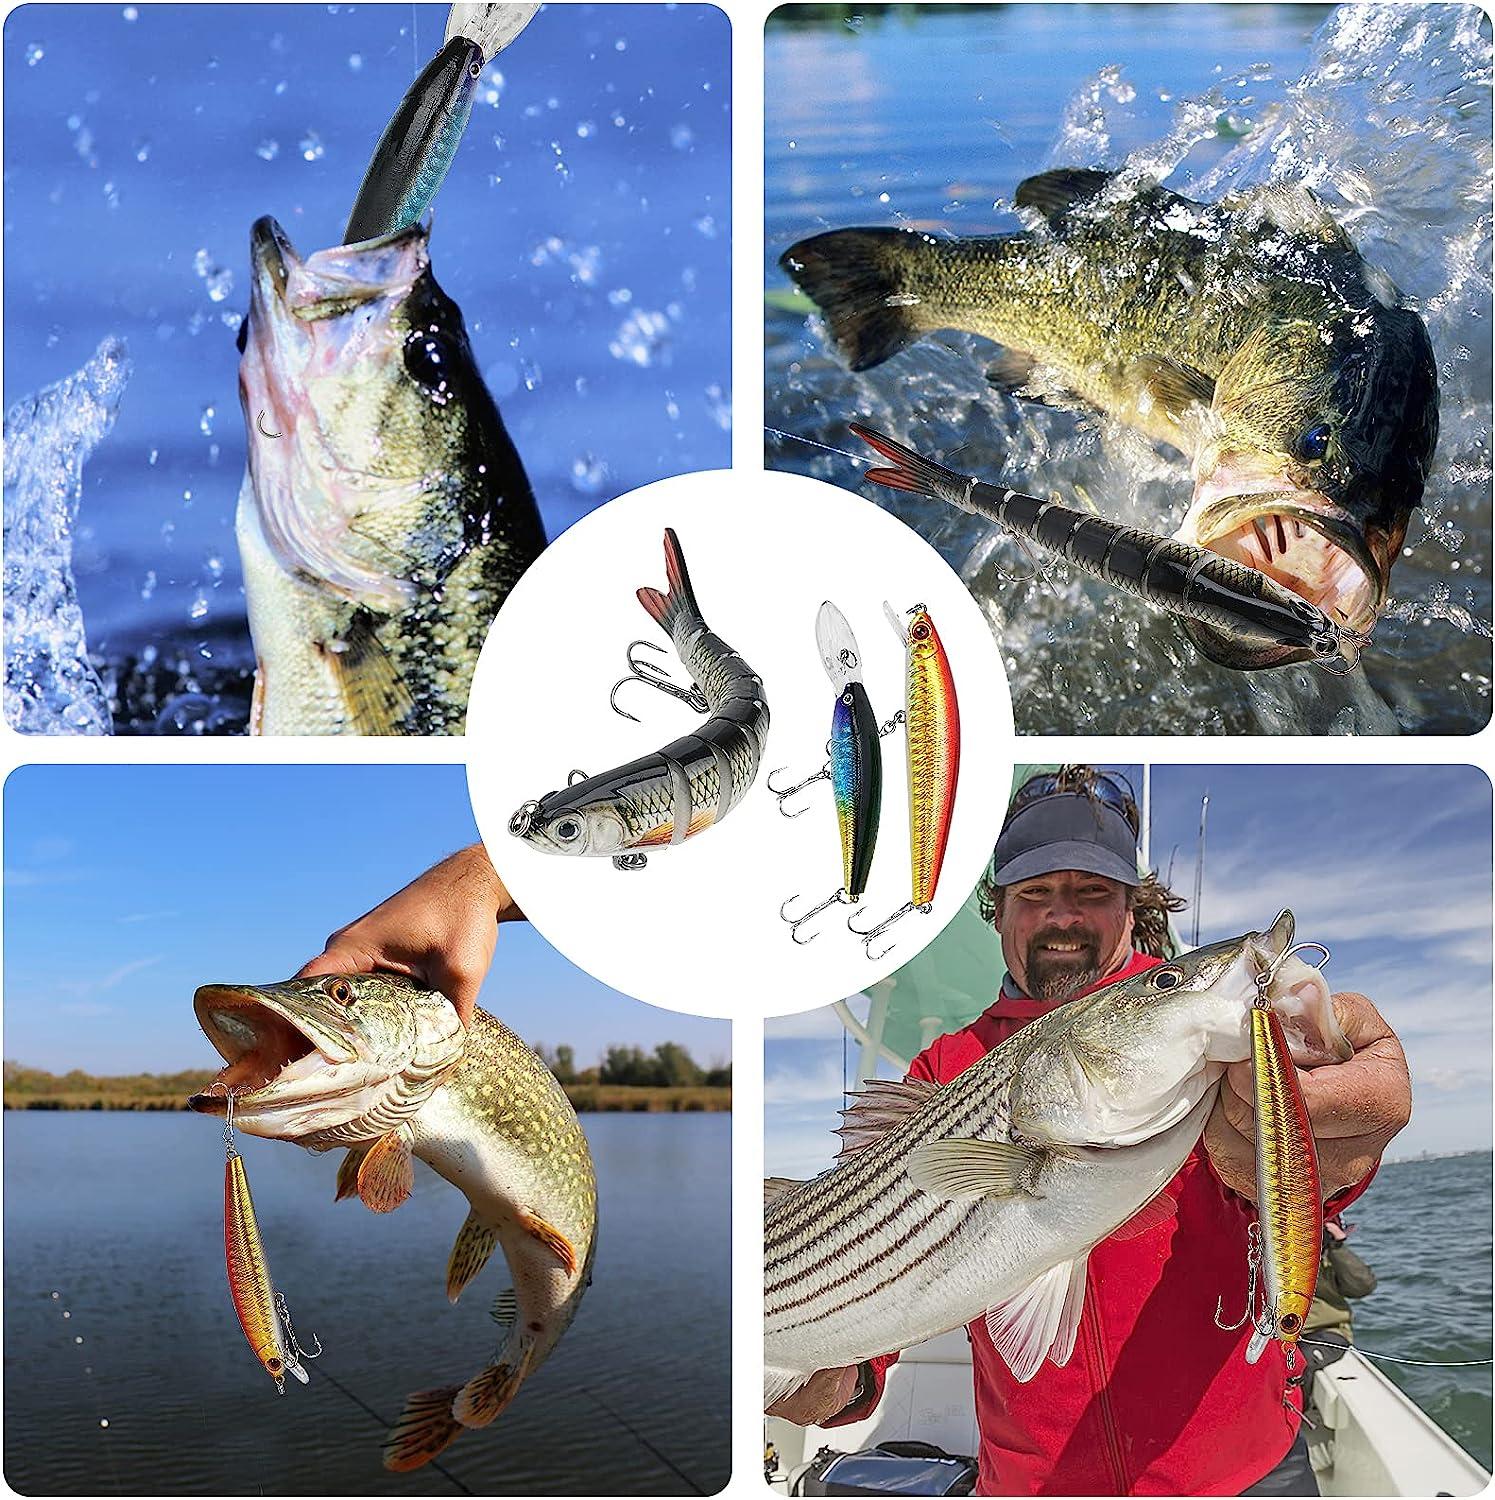  437Pcs Fishing Lures Kit For Freshwater &Saltwater,Bass Fishing  Lure Kit Trout Bass Salmon Walleye, Fishing Hooks,Fishing Tackle Box,  Fishing Accessories Kit, Lifelike Fish Bait